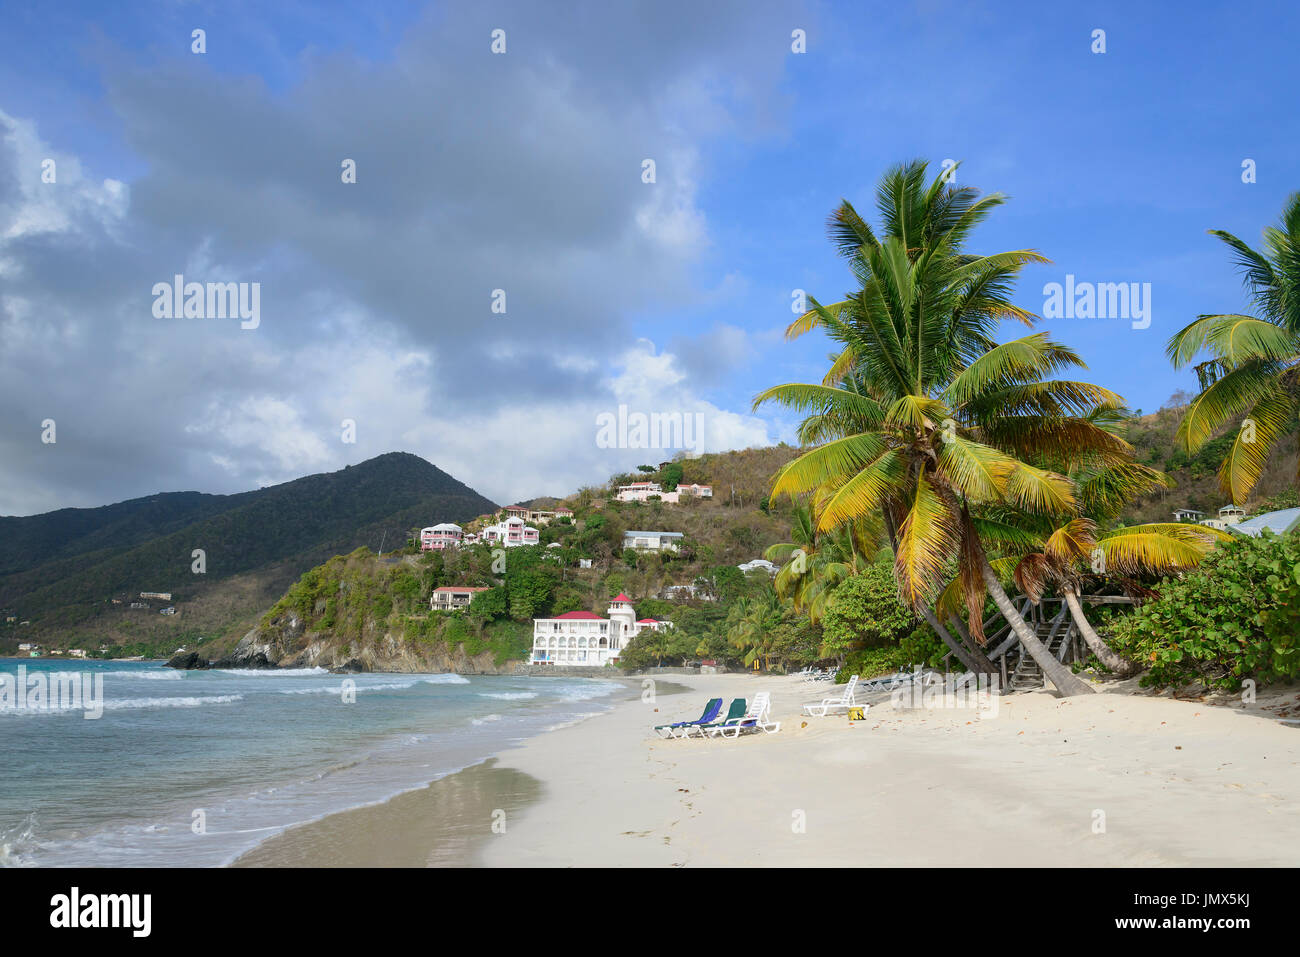 Plage de sable fin et palmiers, l'île de Tortola, British Virgin Islands, mer des Caraïbes Banque D'Images